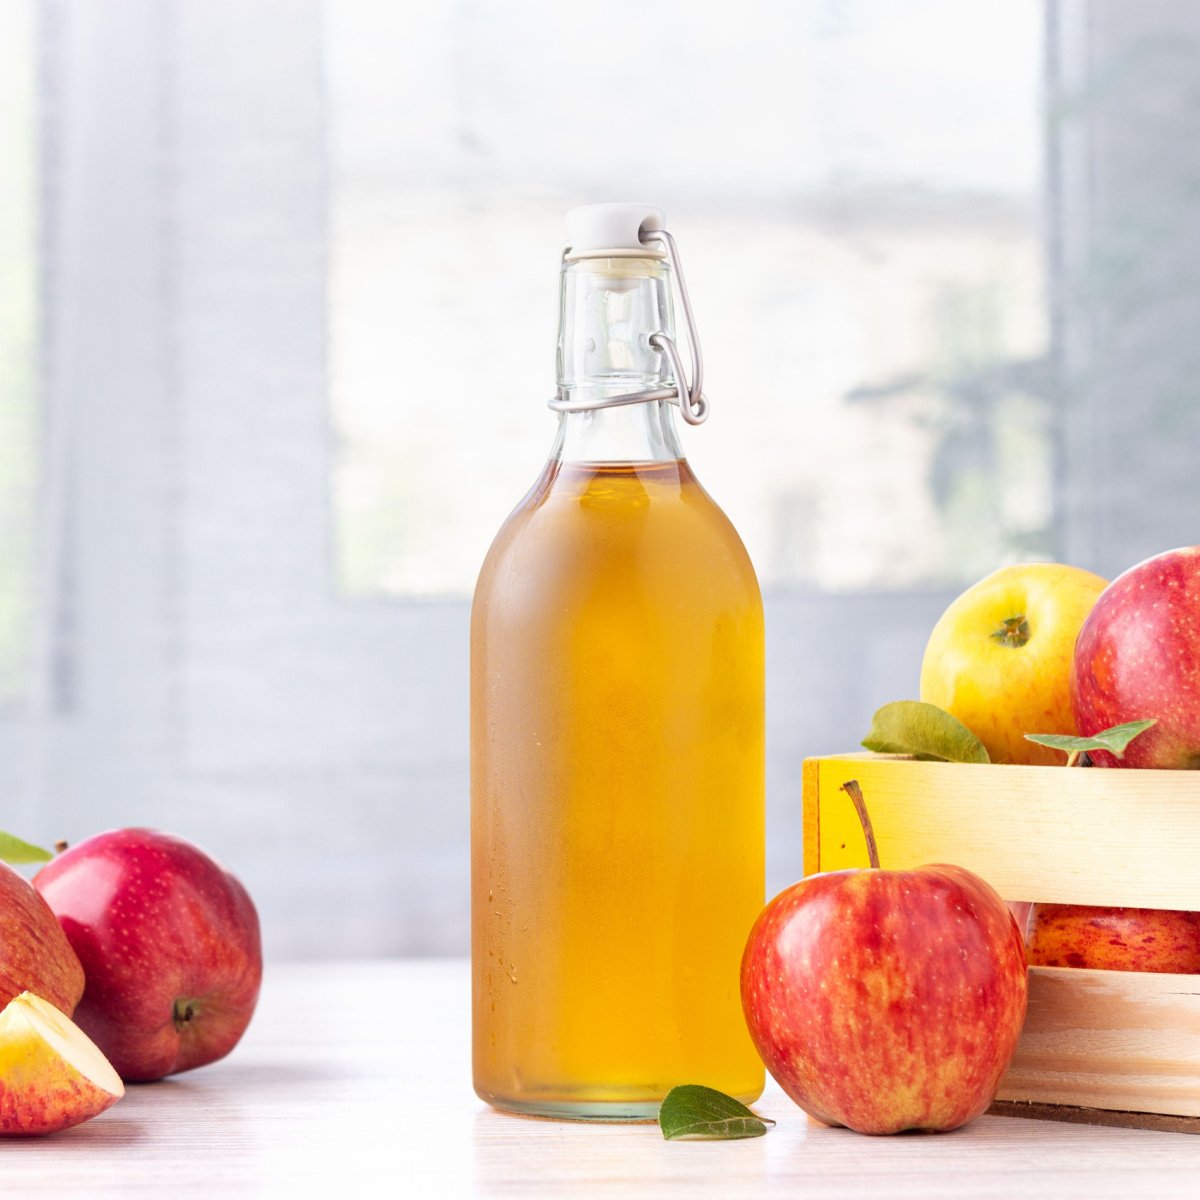 apple cider vinegar in glass bottle on white table beside box of fresh ripe apples